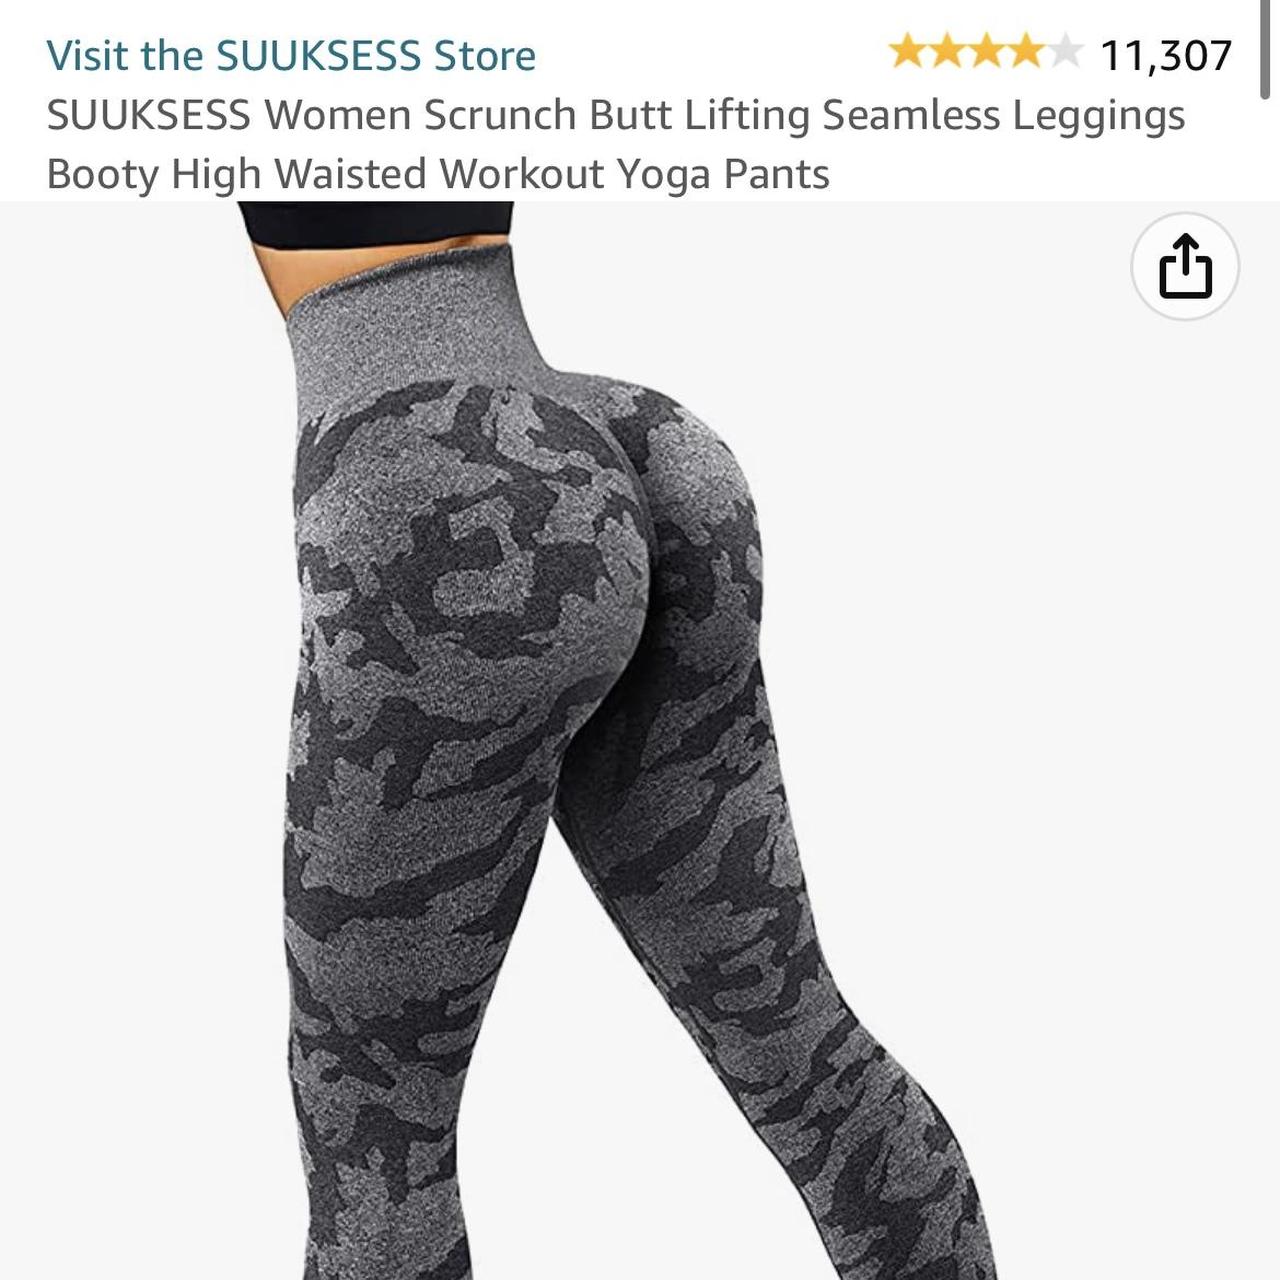 SUUKSESS Women Scrunch Butt Lifting Seamless - Depop